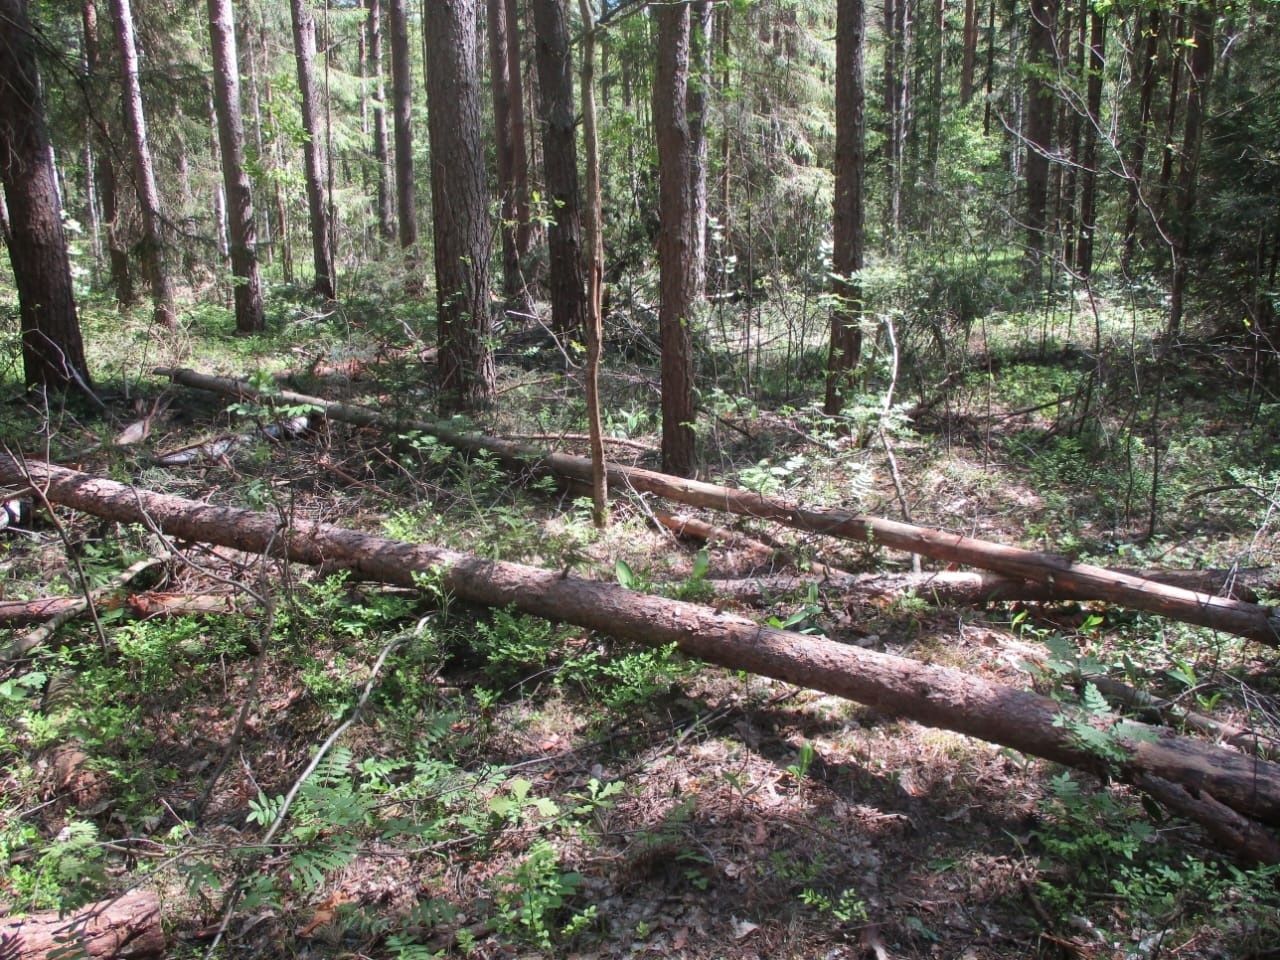 В Муромском районе неизвестные нарубили дров в заказнике на полмиллиона рублей